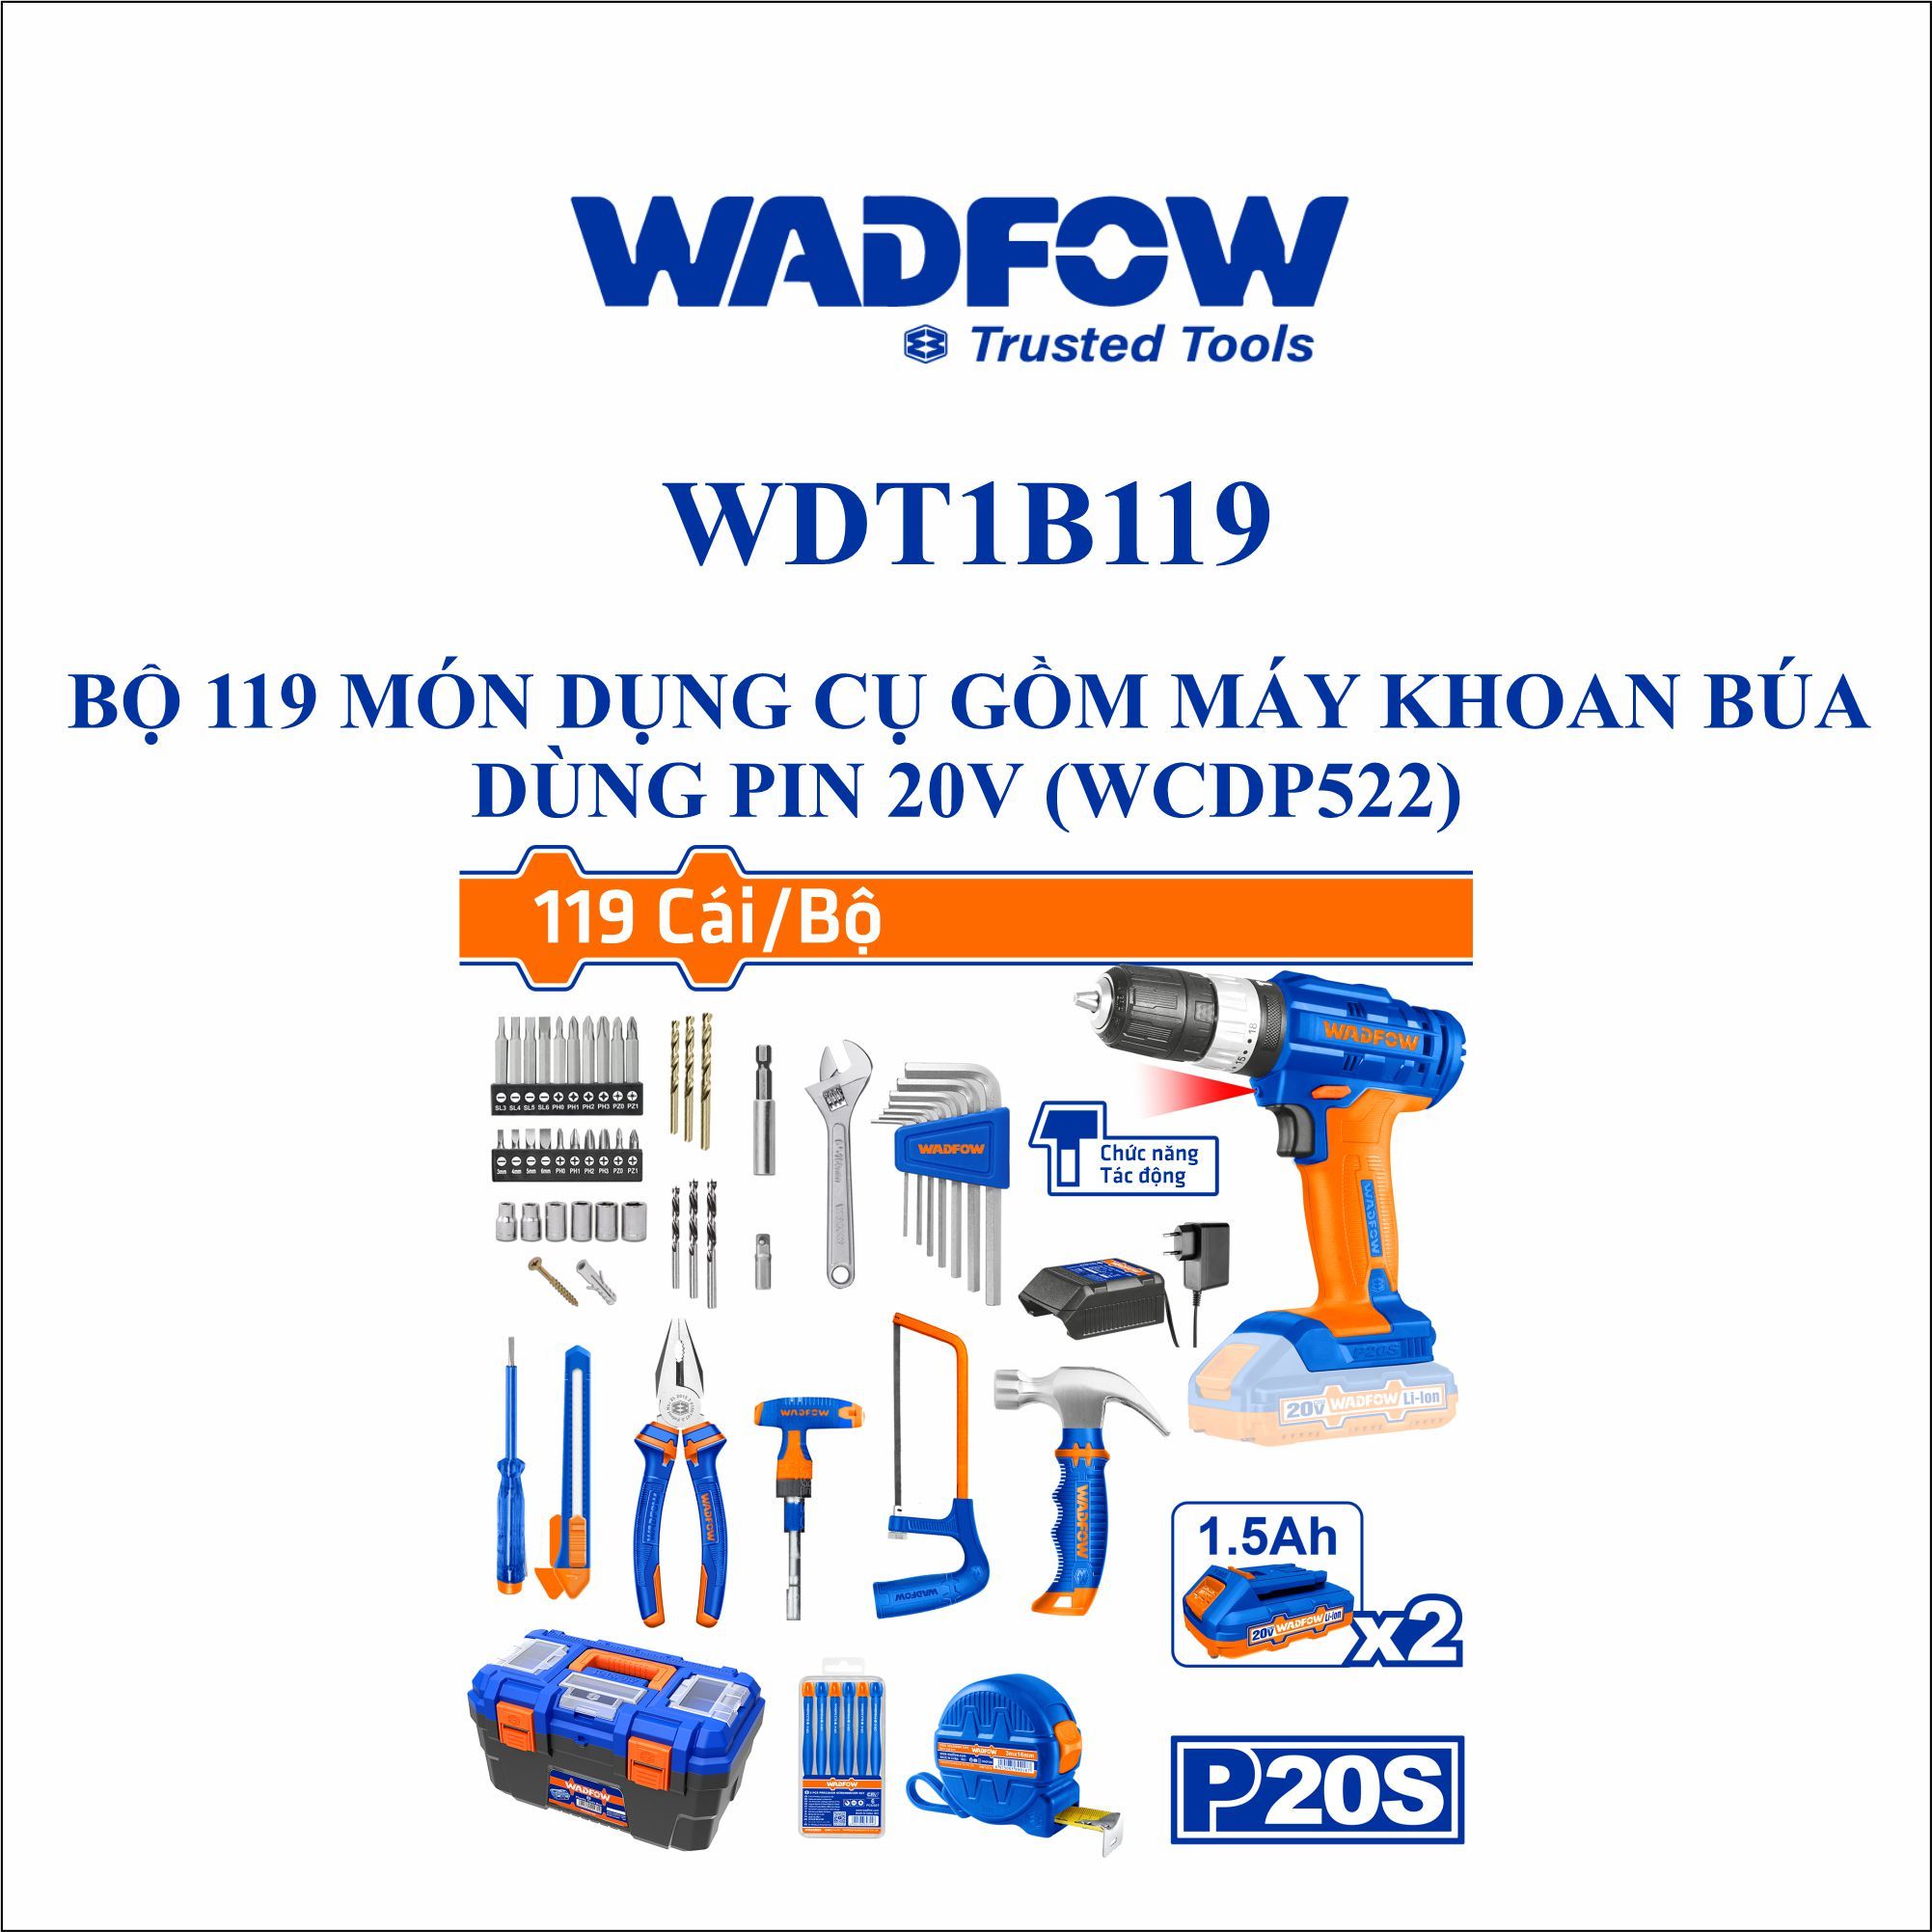  Bộ 119 món dụng cụ gồm máy khoan búa dùng pin 20V WADFOW WDT1B119 